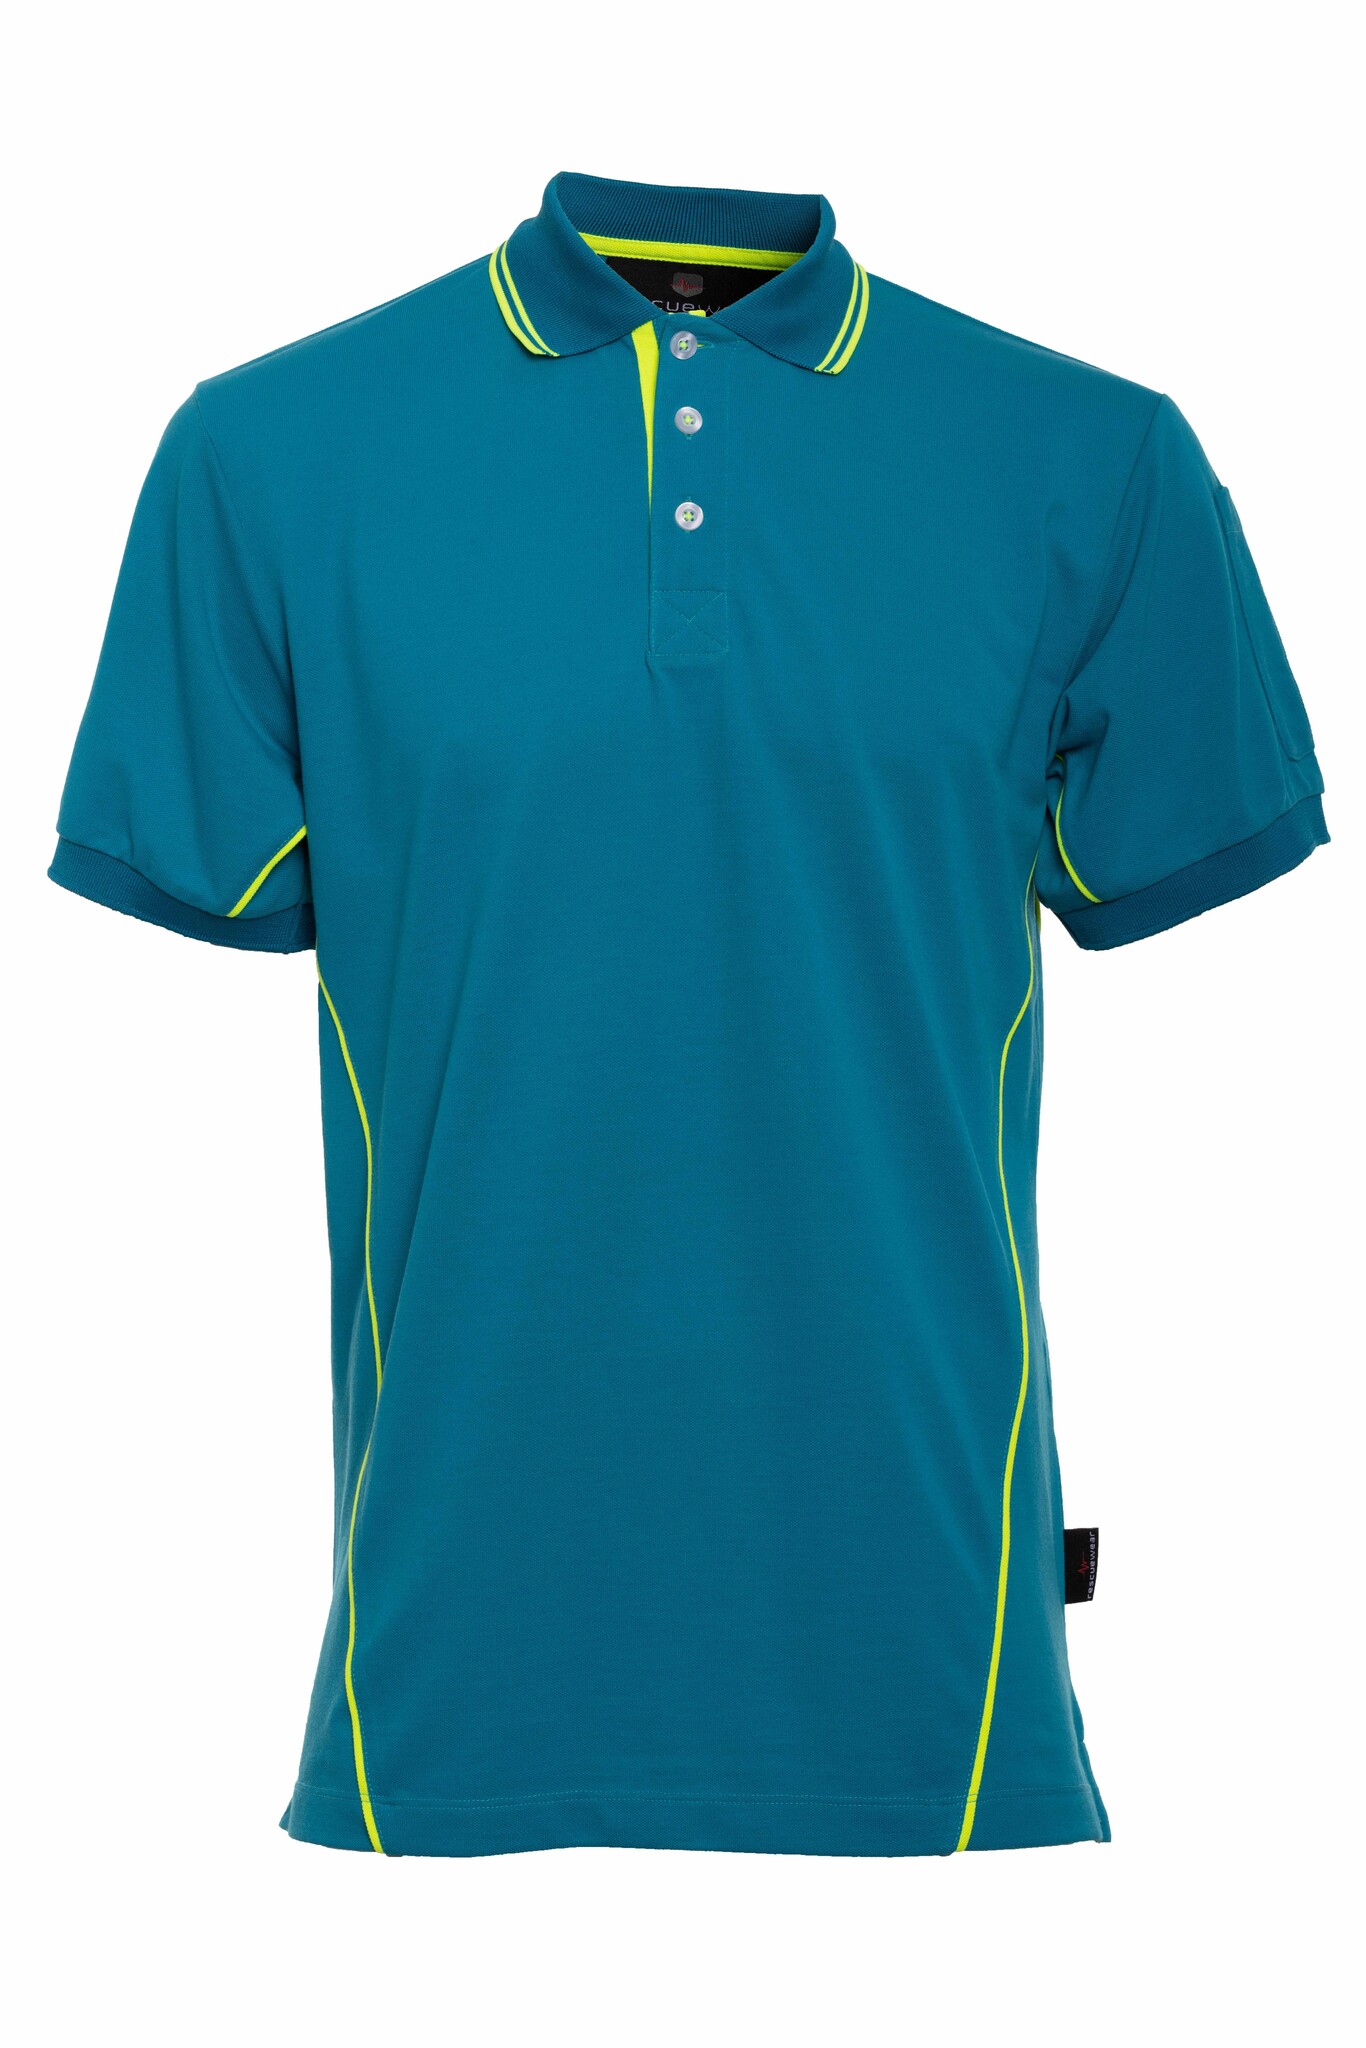 Blau Basic, Neongelbe Enamel/ mit Paspeln Kurze ärmel, Navy Poloshirt